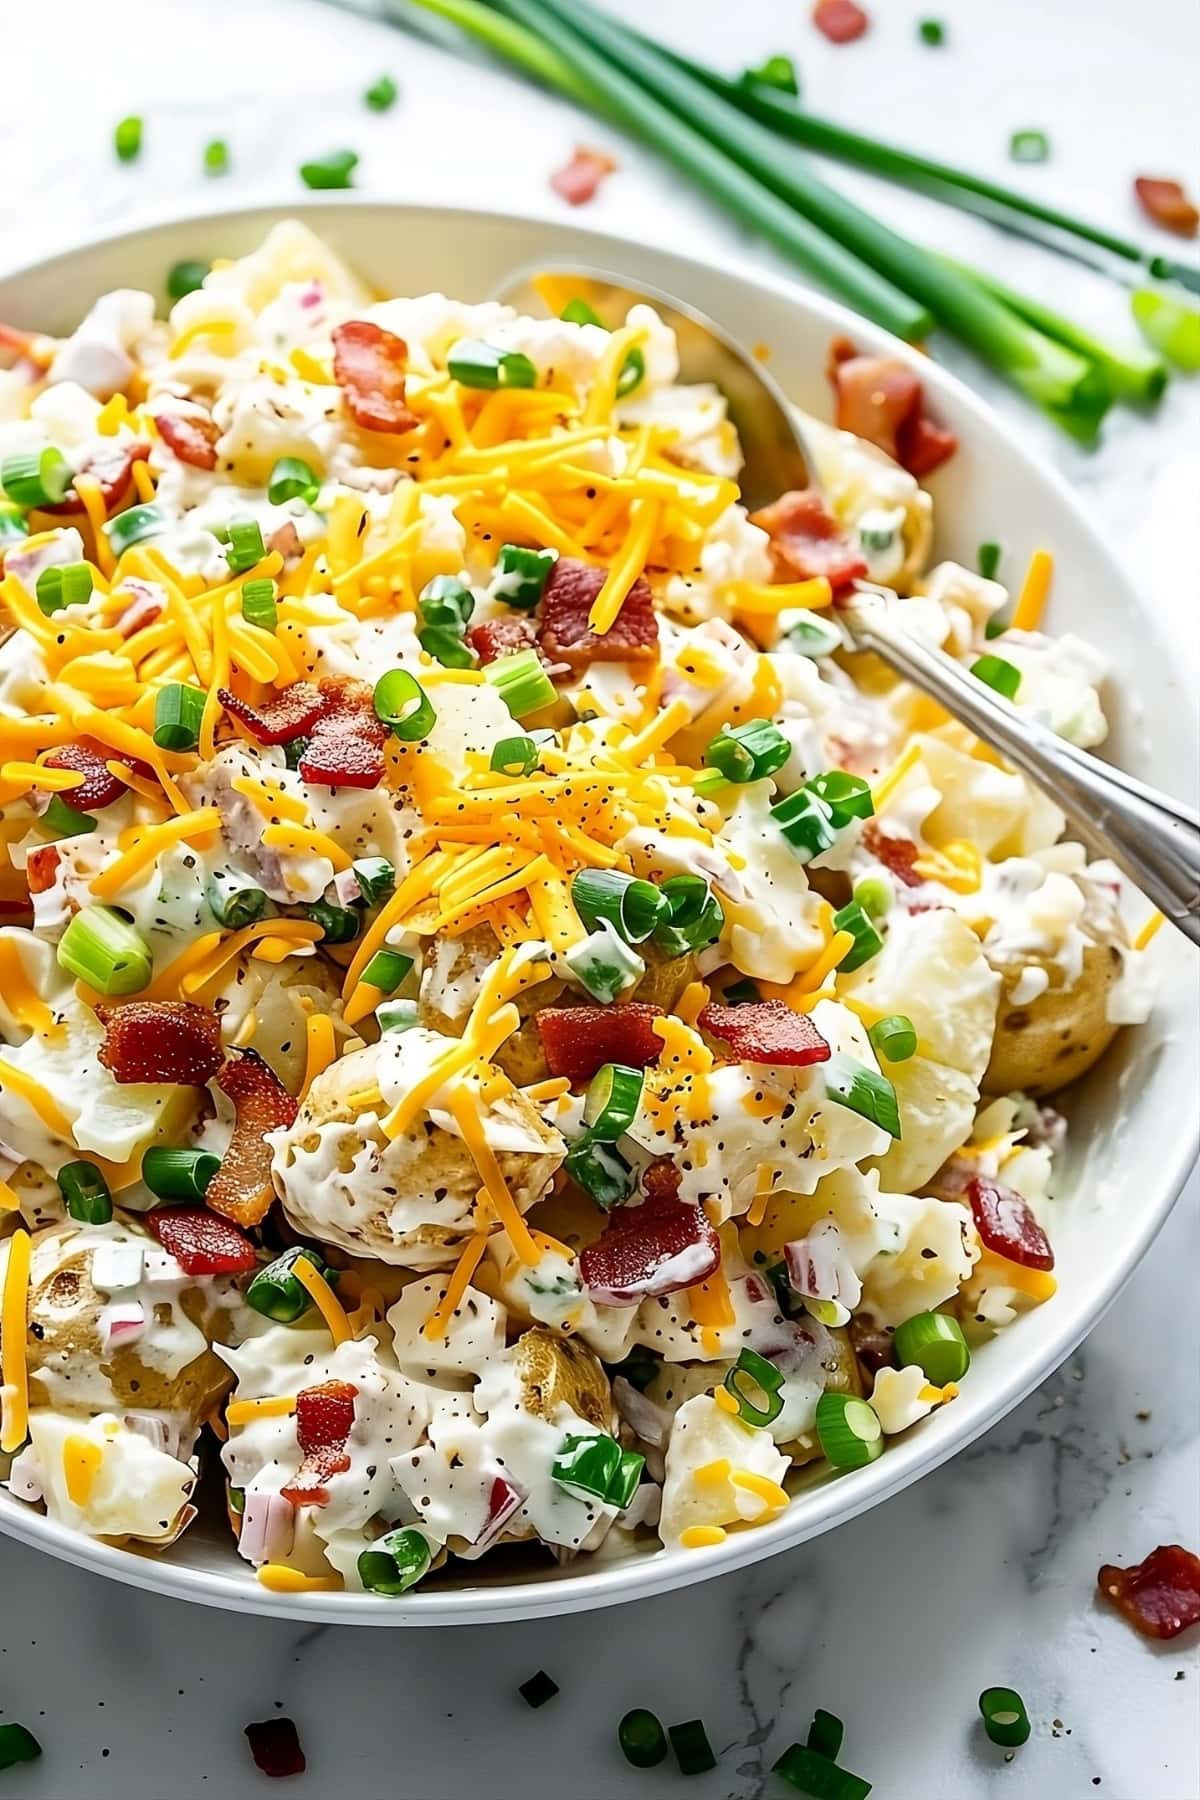 Loaded Baked Potato Salad Recipe - Insanely Good